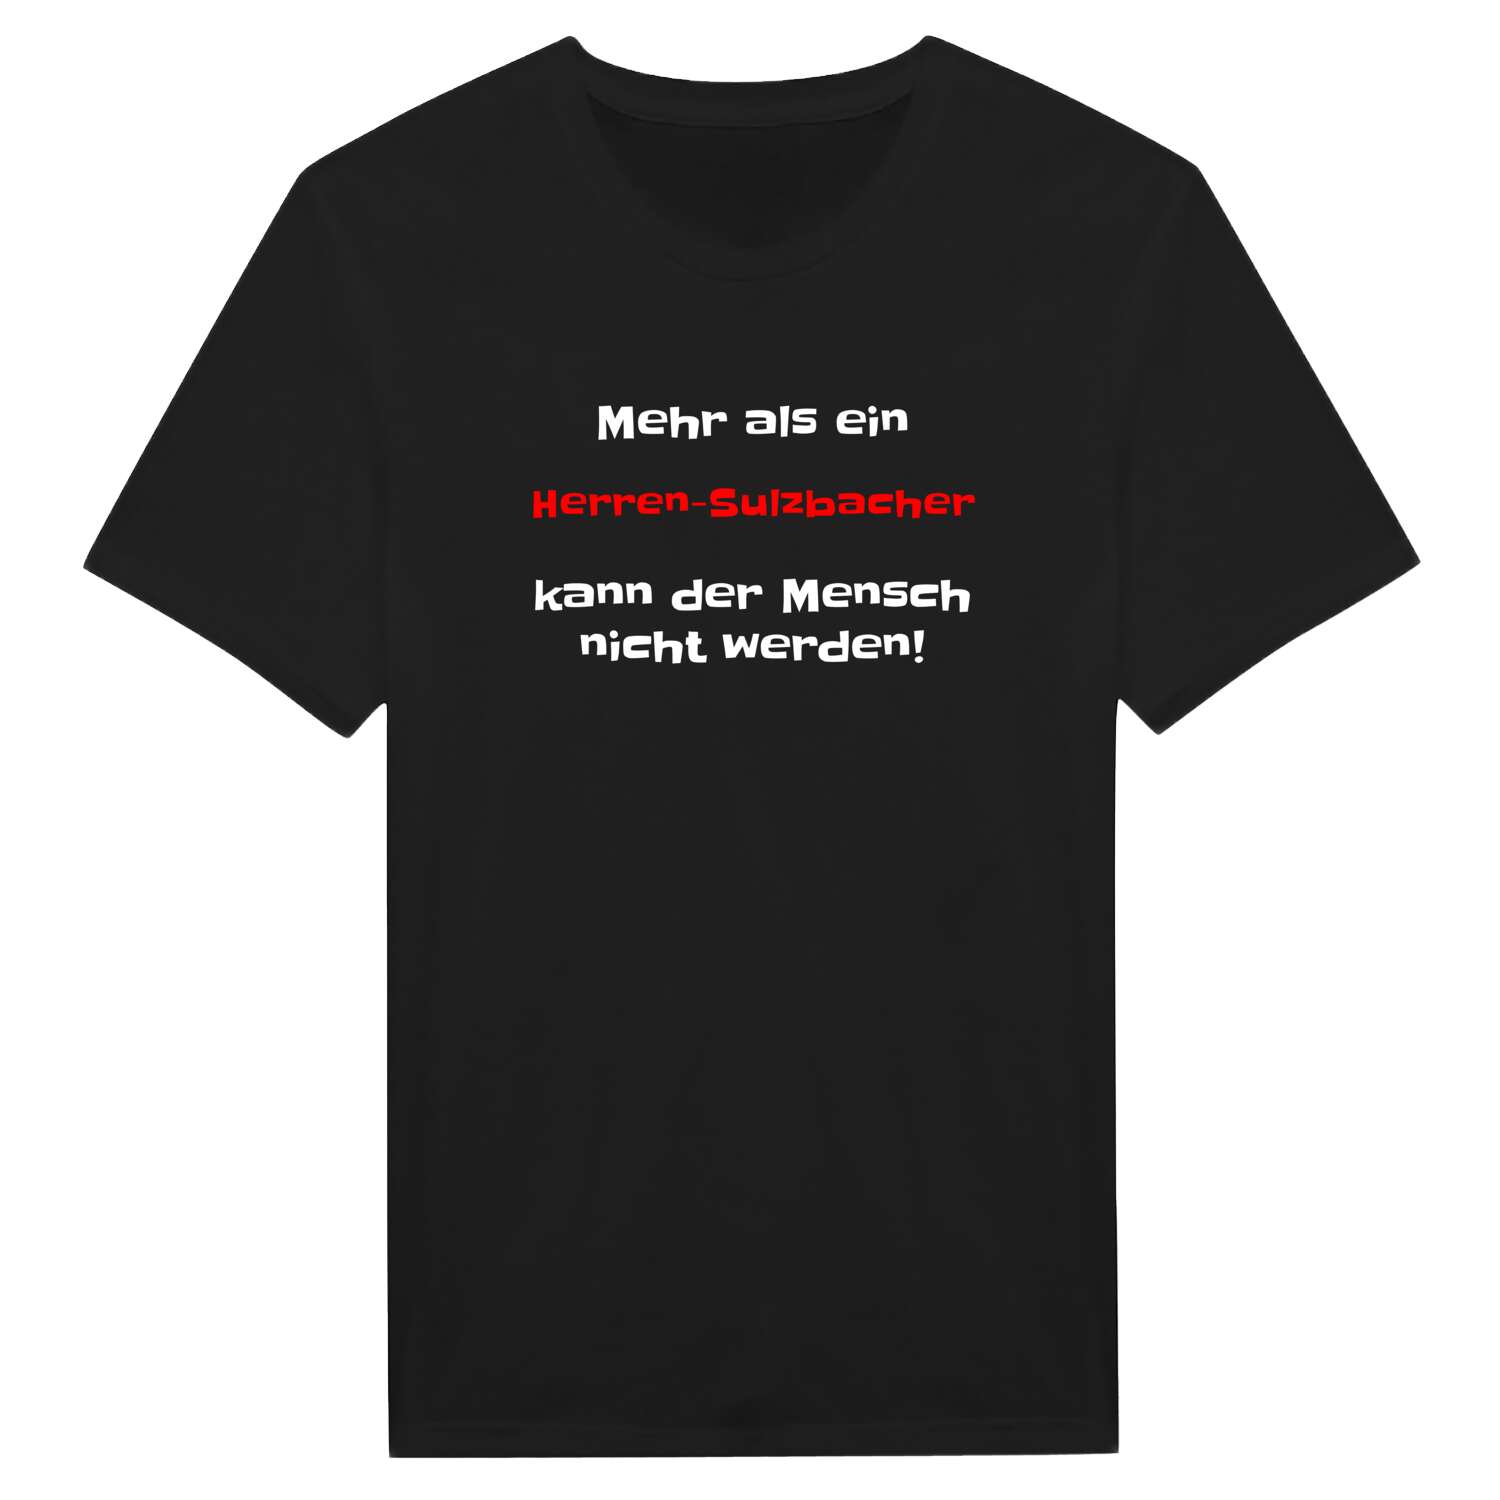 Herren-Sulzbach T-Shirt »Mehr als ein«